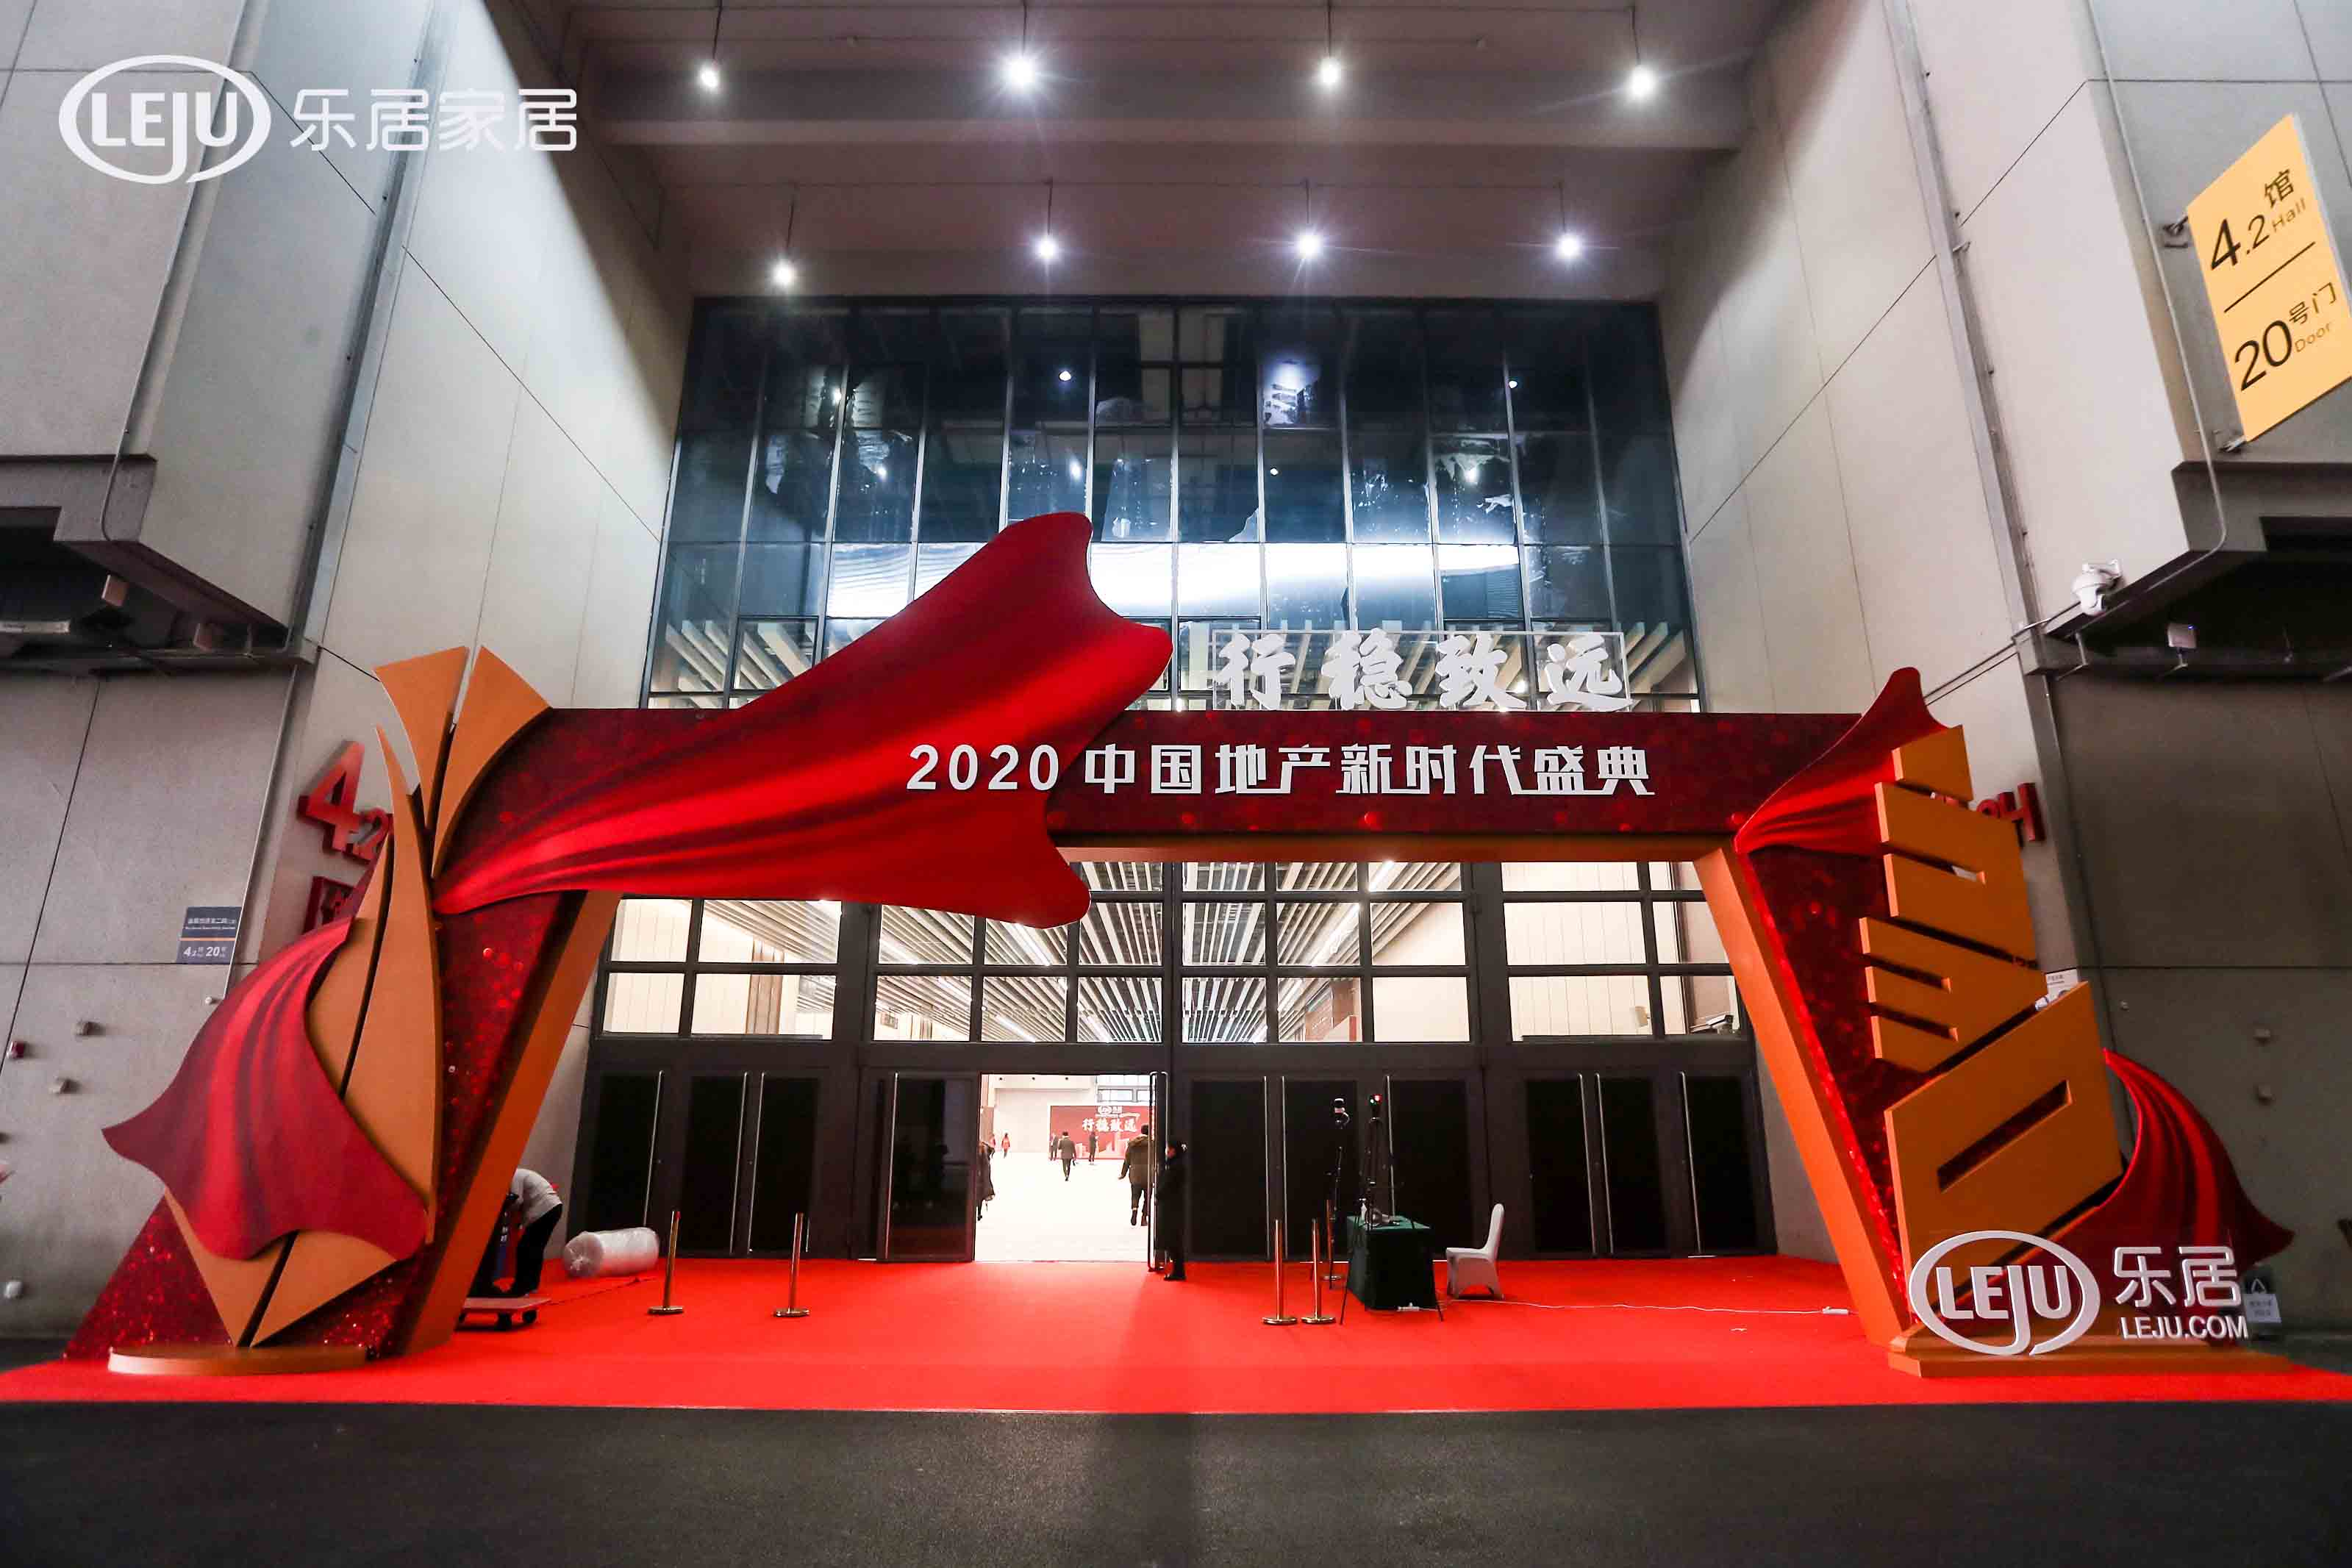 2020中国地产新时代盛典 | 第一服务控股(2107.HK)荣获三项大奖